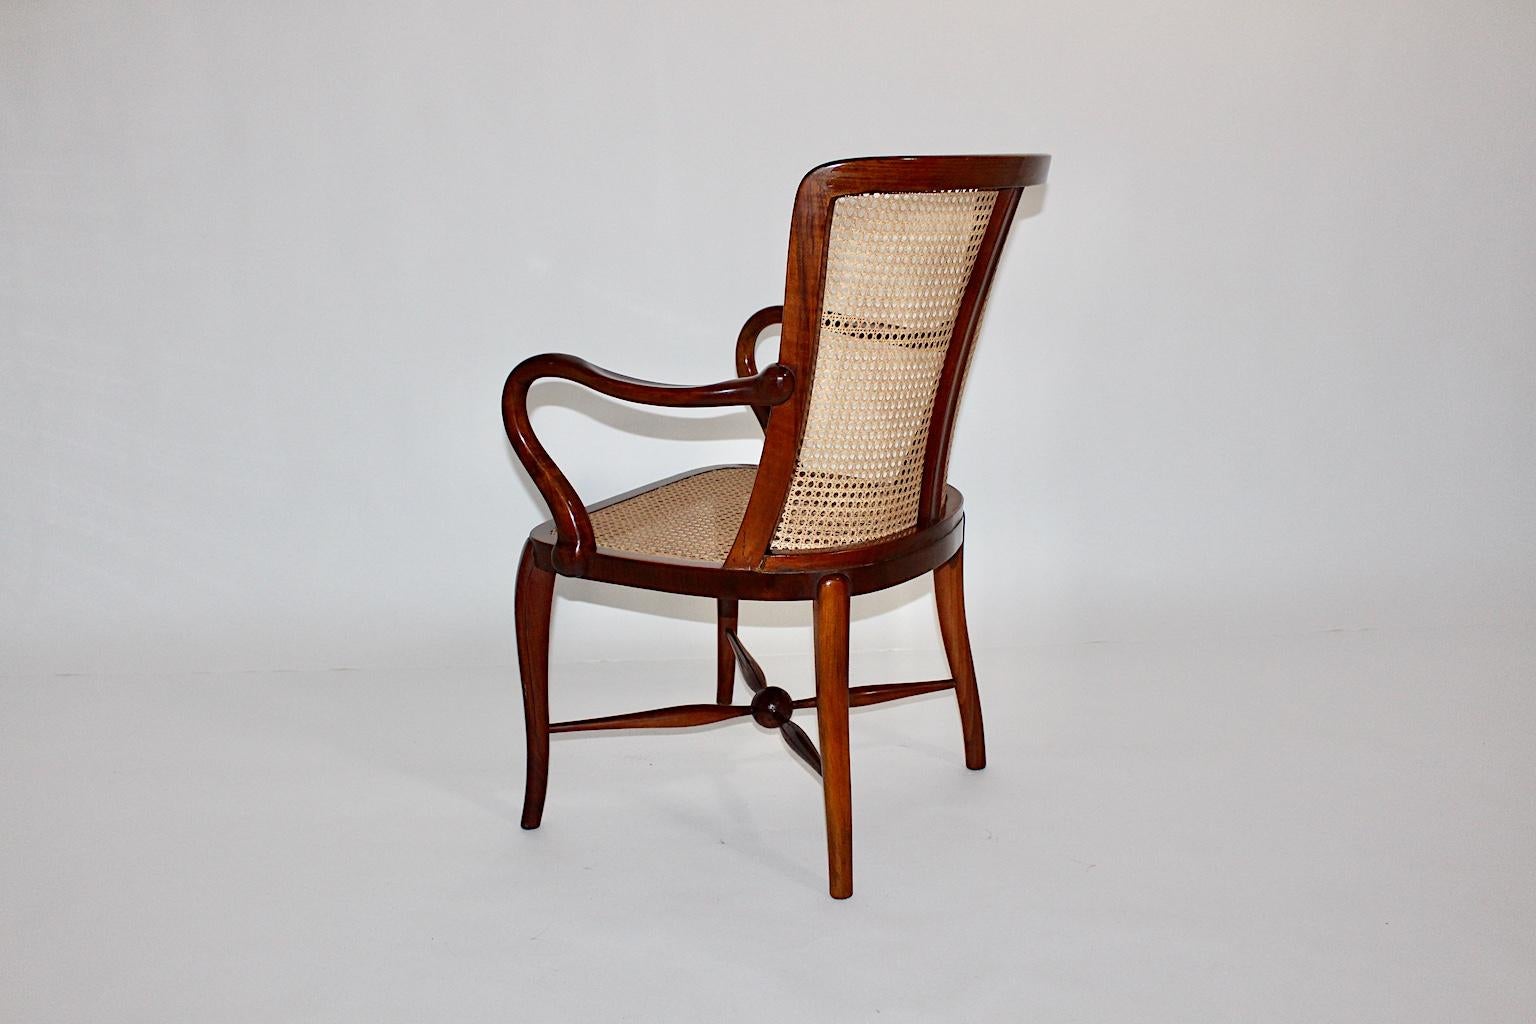 Art Deco Sessel oder Lounge Chair Design von Walter Sobotka (aus dem Umkreis von Josef Frank) für die Wiener Werkbundsiedlung, um 1930.
Dieser erstaunliche Sessel aus der Art Déco-Ära hat ein Gestell aus massivem Nussbaumholz, während die erneuerte